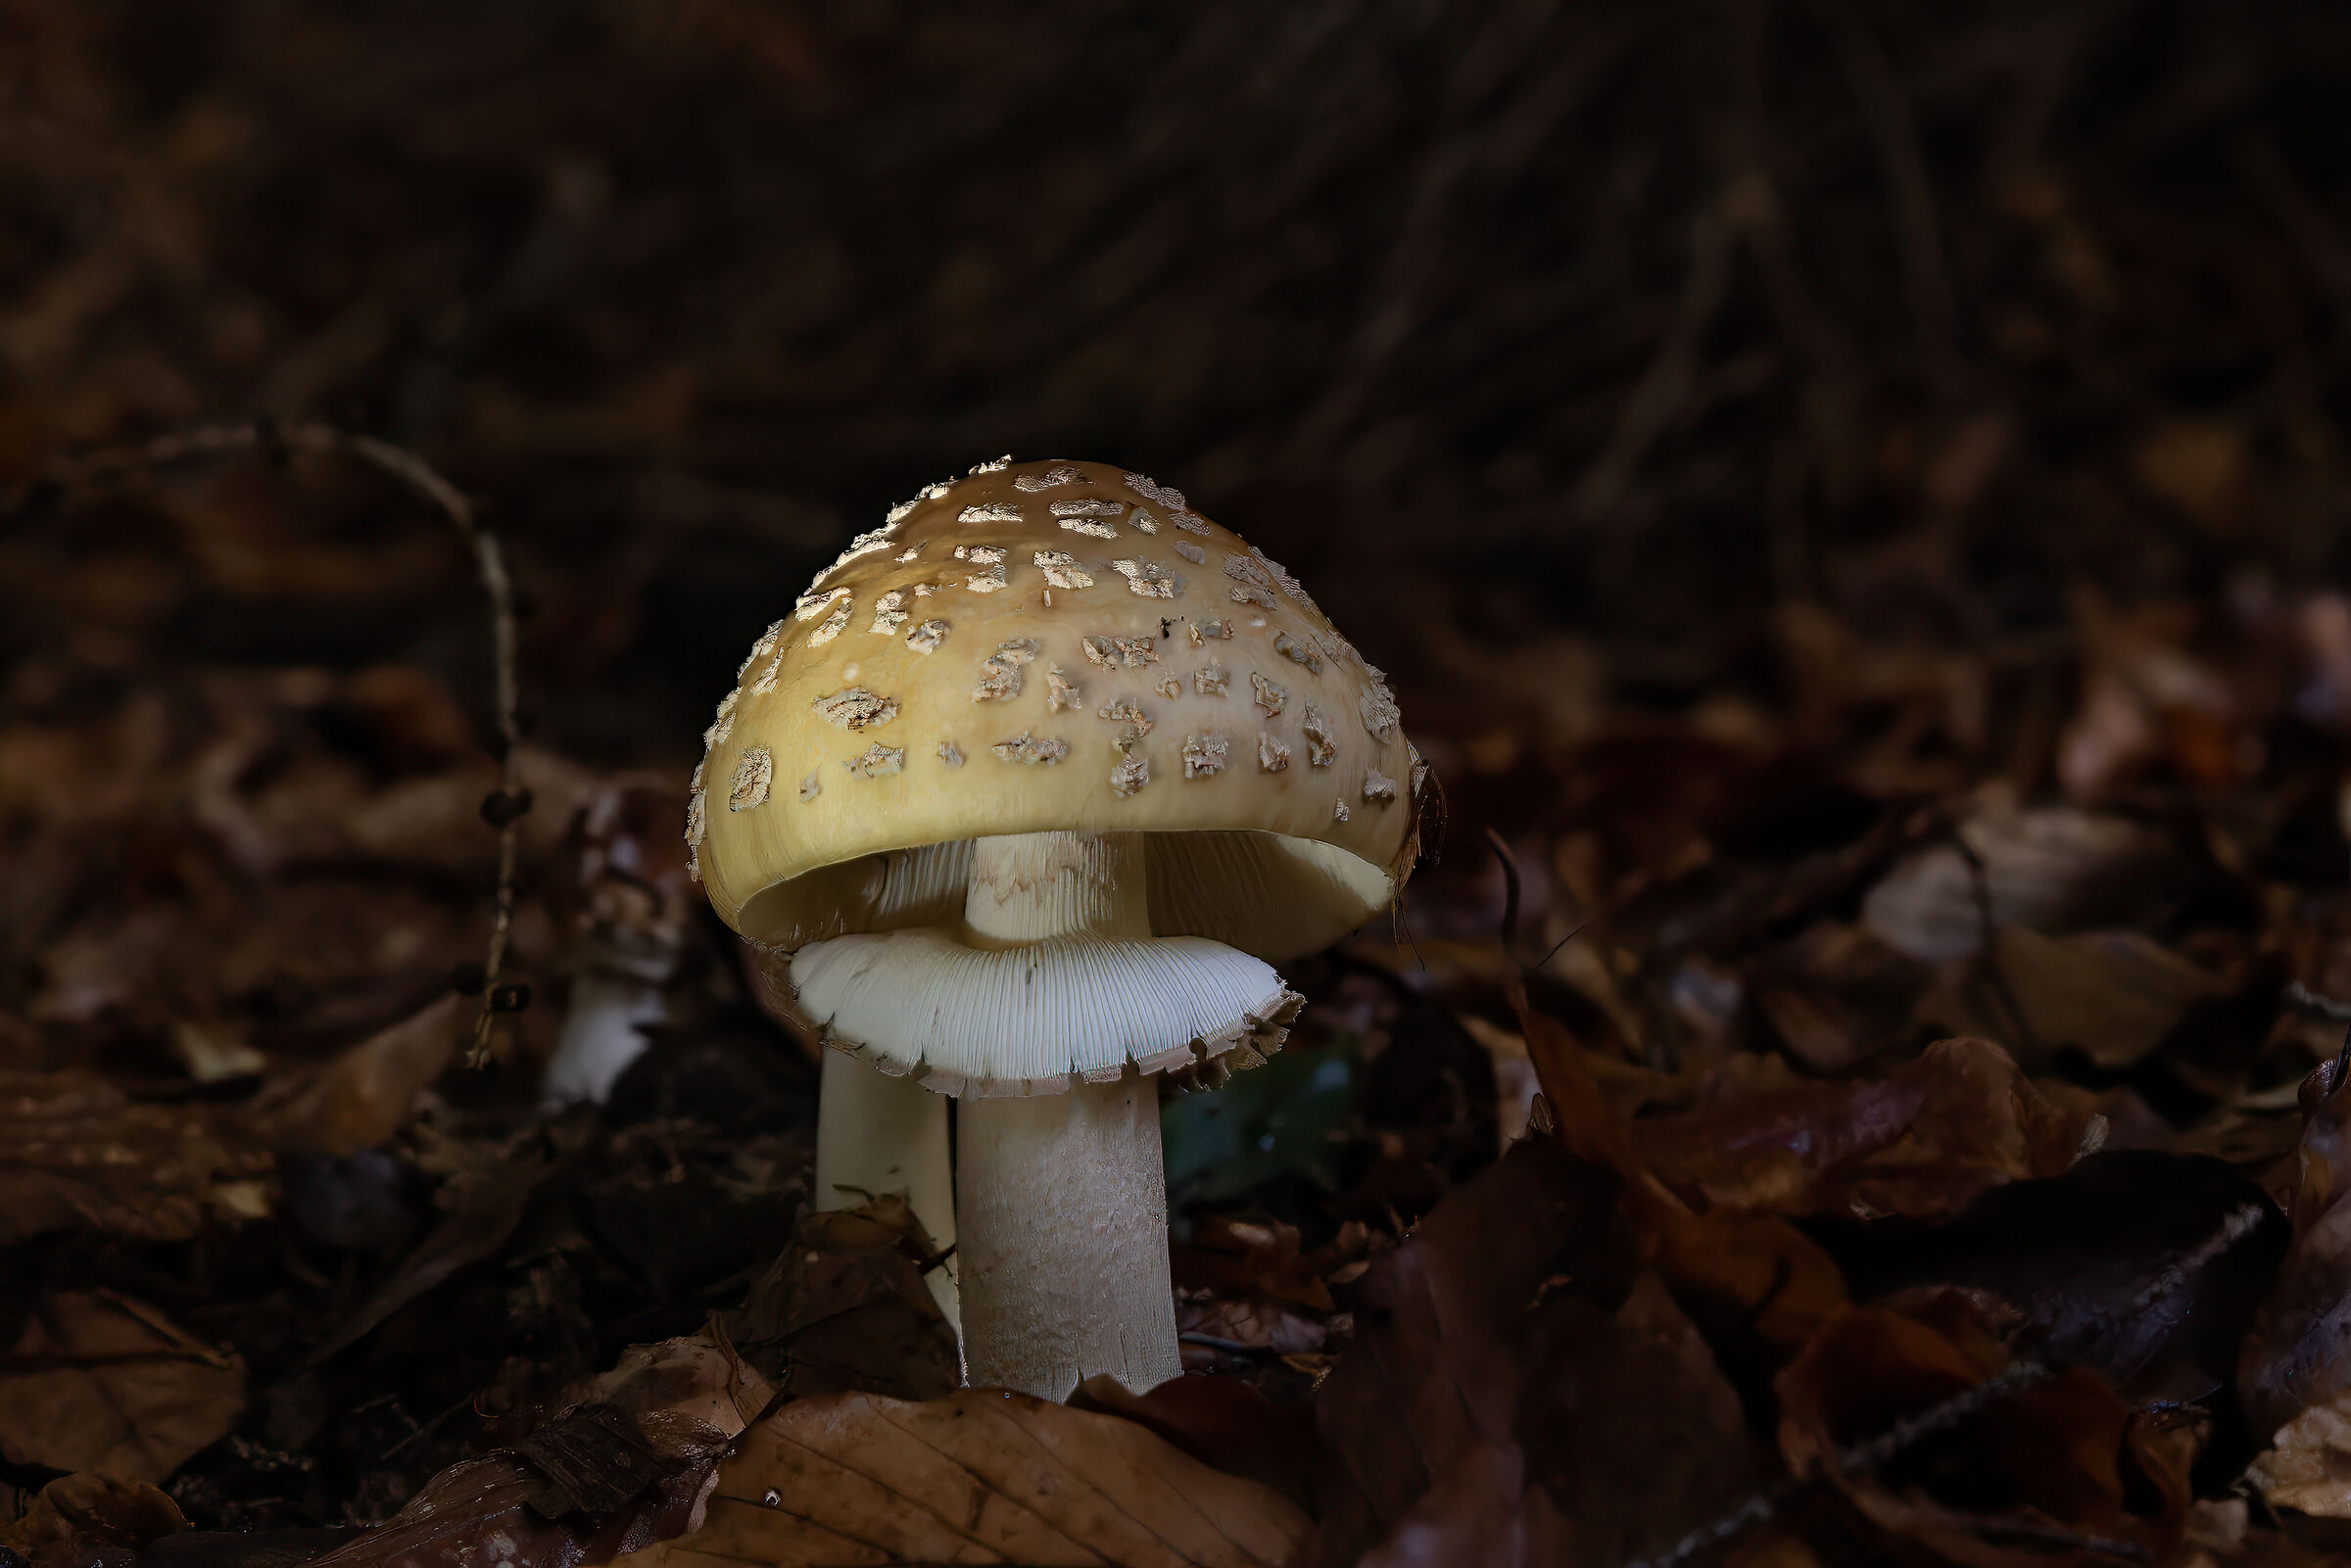 Mushroom time...